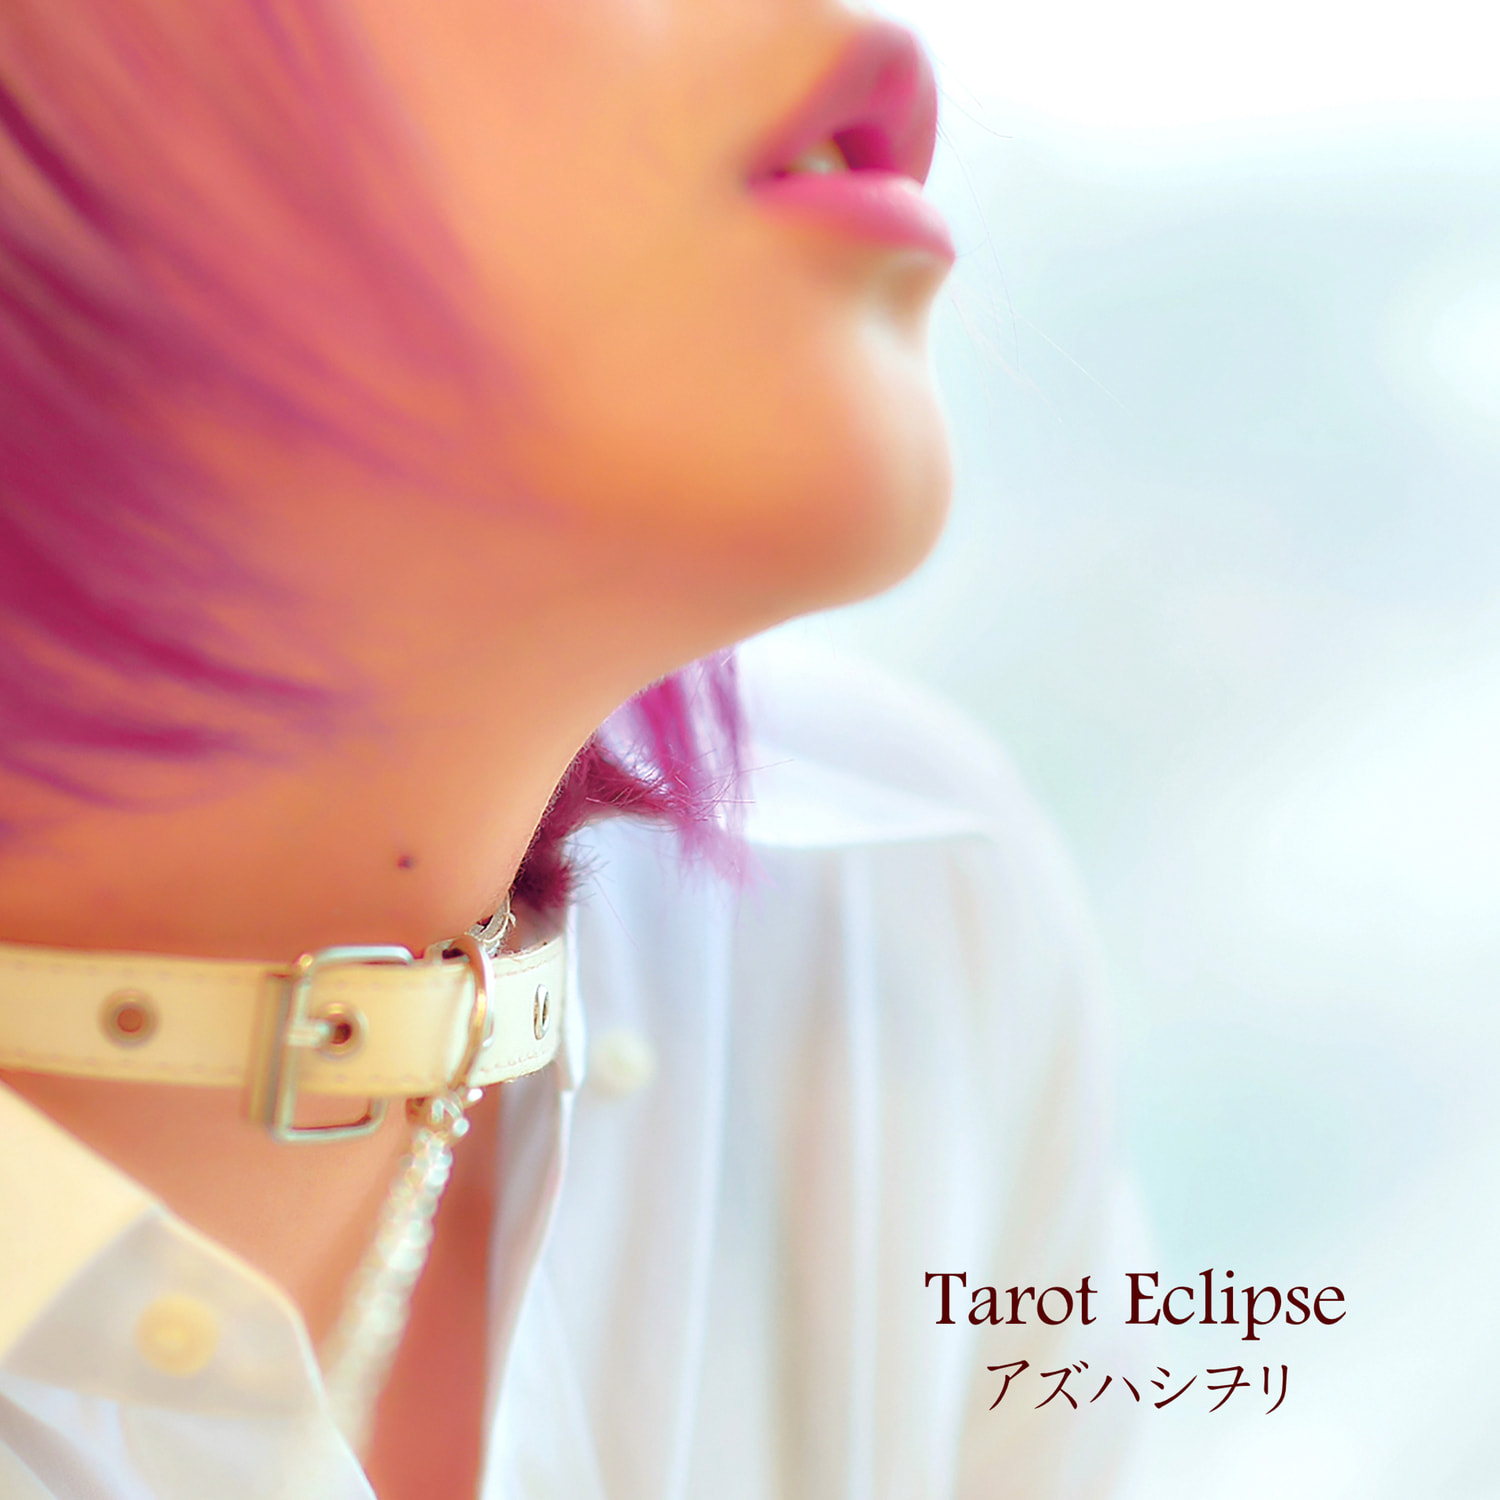 アズハシヲリ Tarot Eclipse ジャケット画像